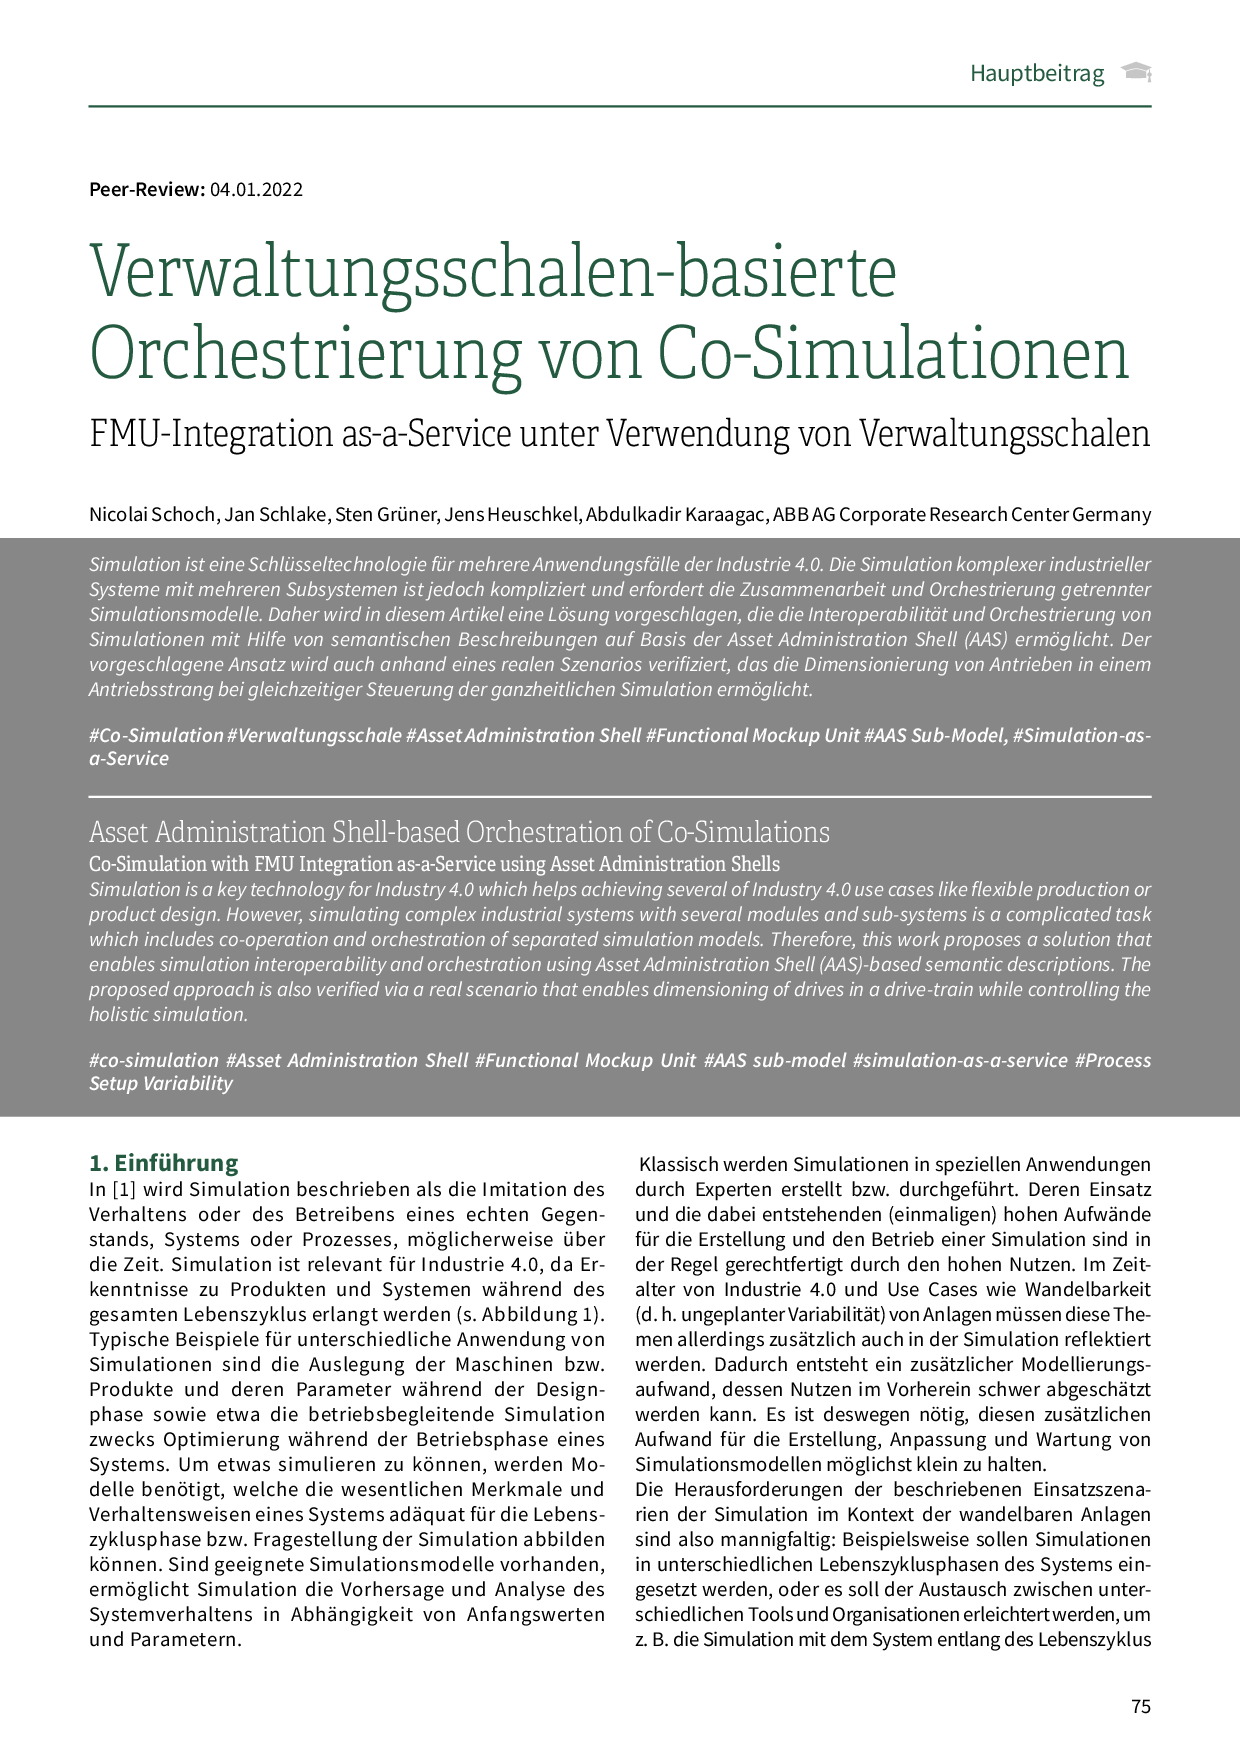 Verwaltungsschalen-basierte Orchestrierung von Co-Simulationen